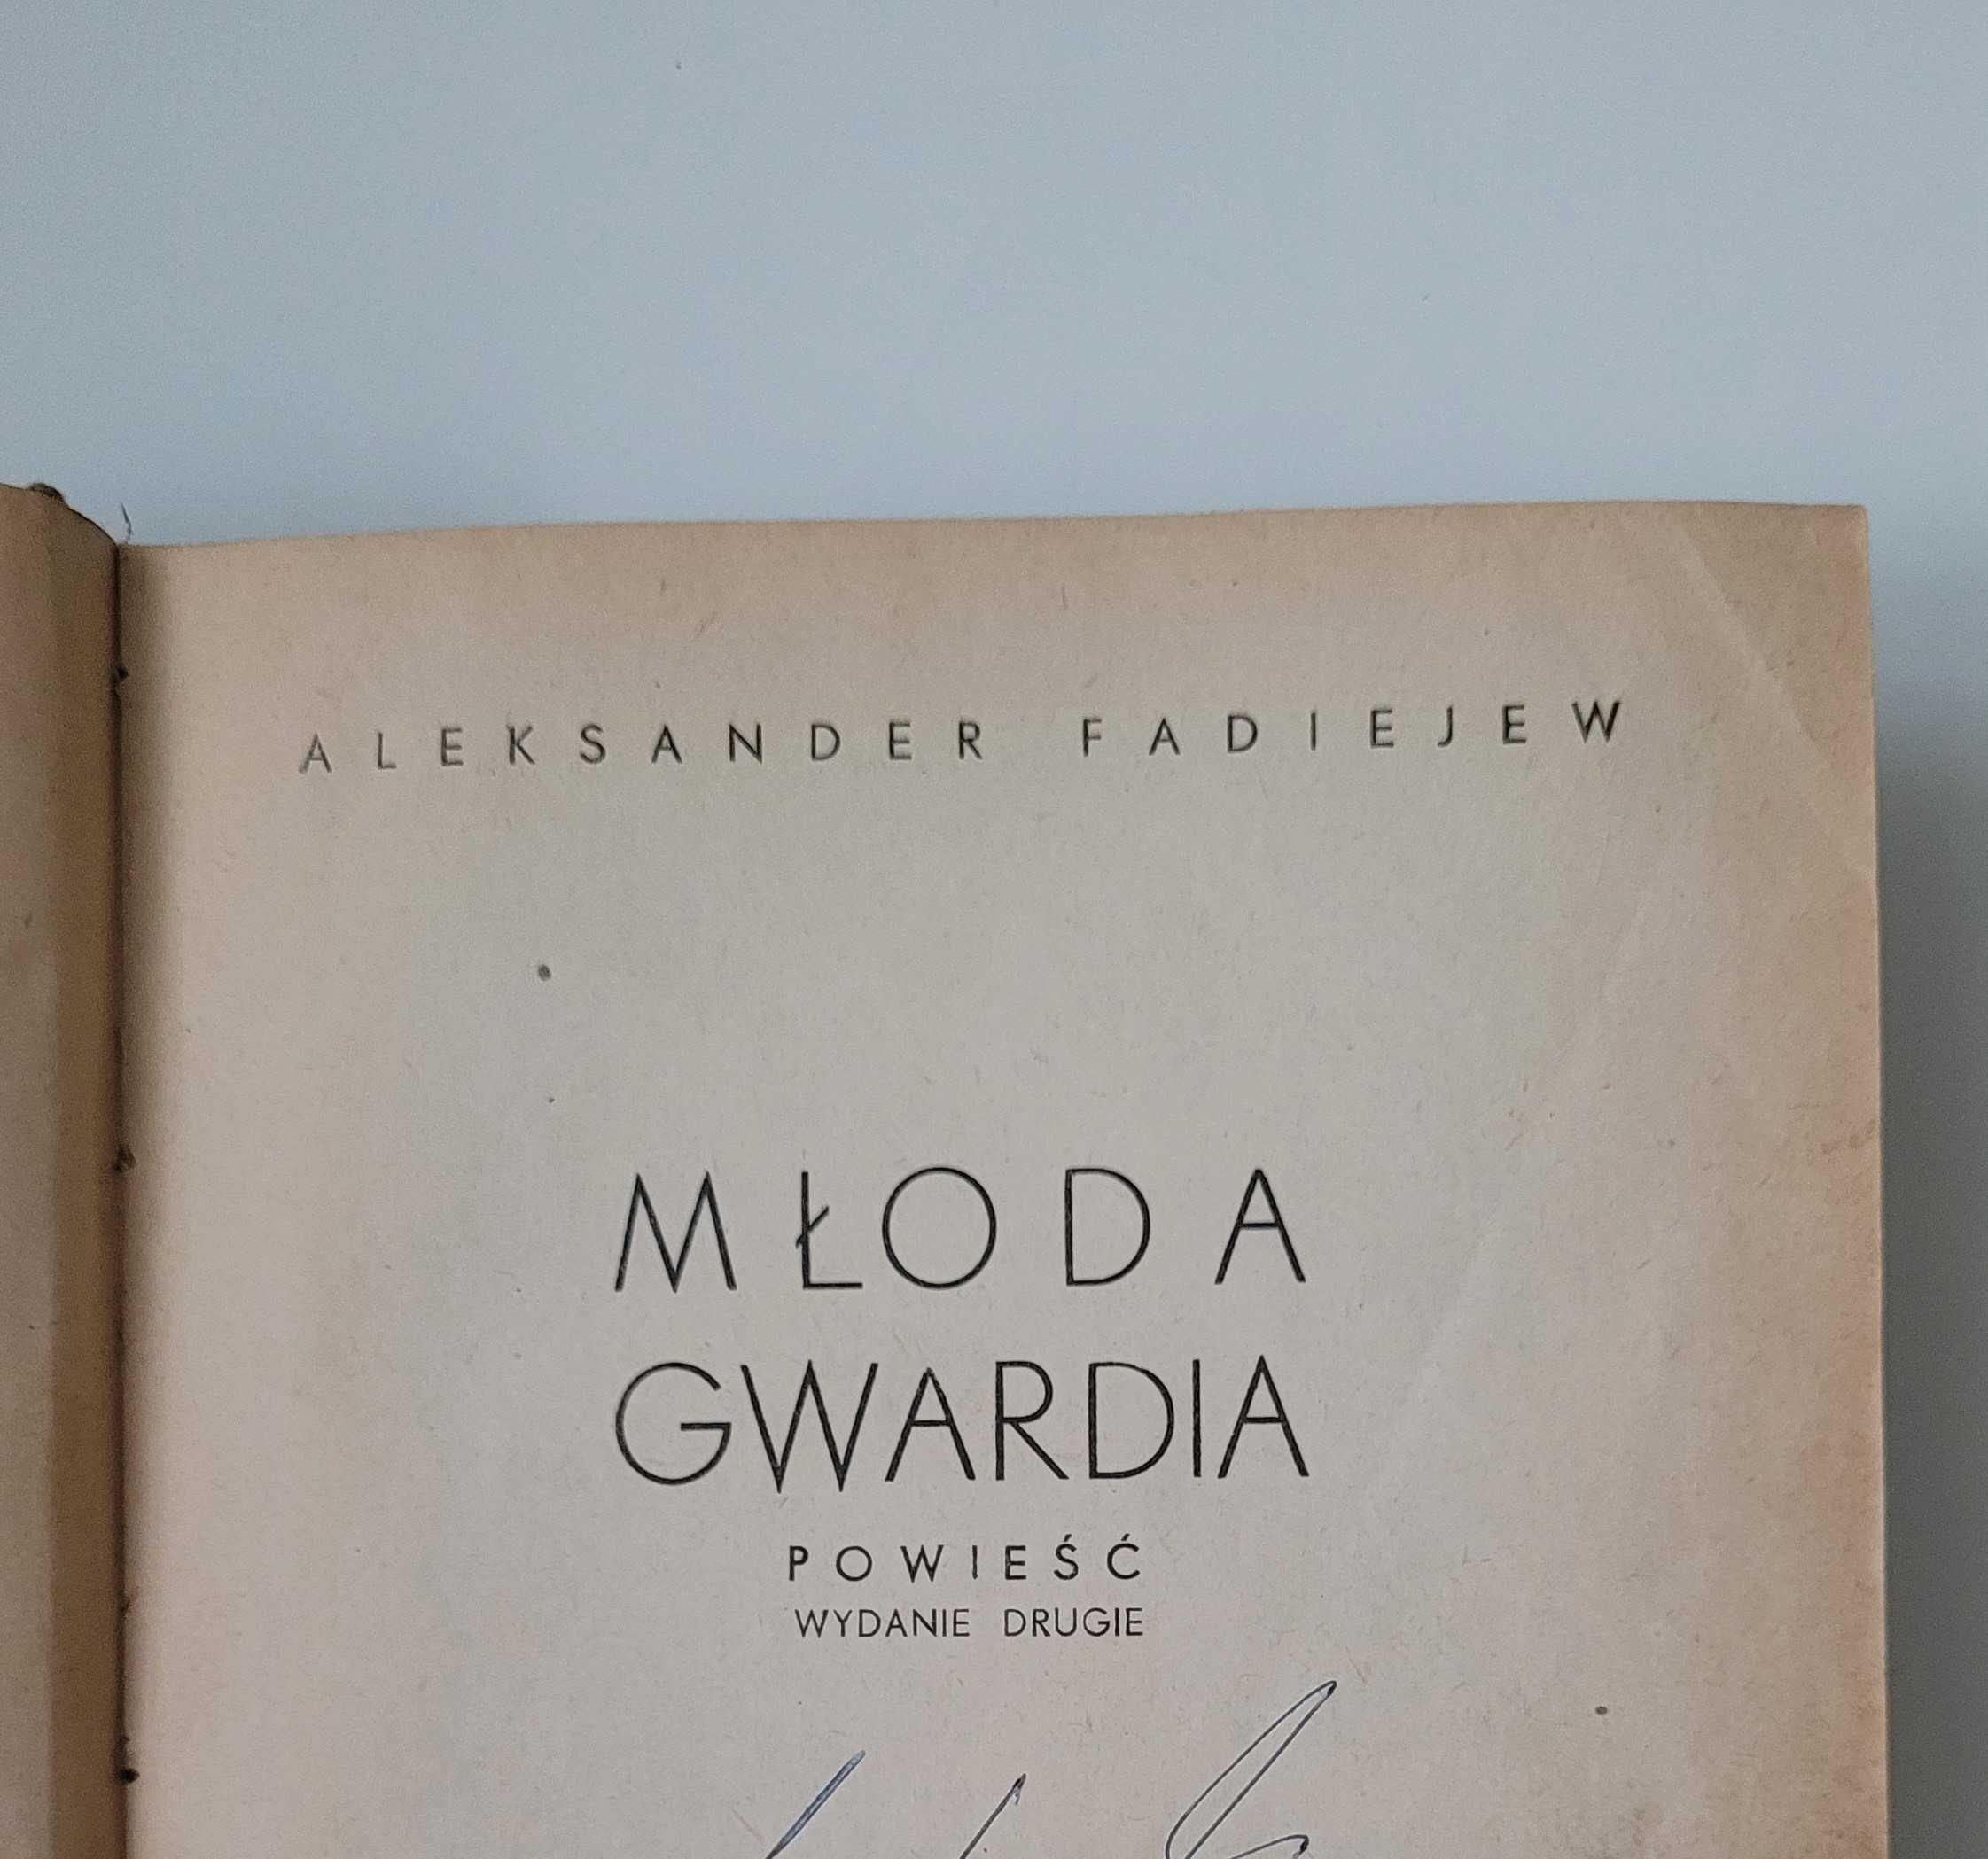 Unikat "Młoda gwardia", Aleksander Fadiejew, wydanie drugie, wyd. 1949